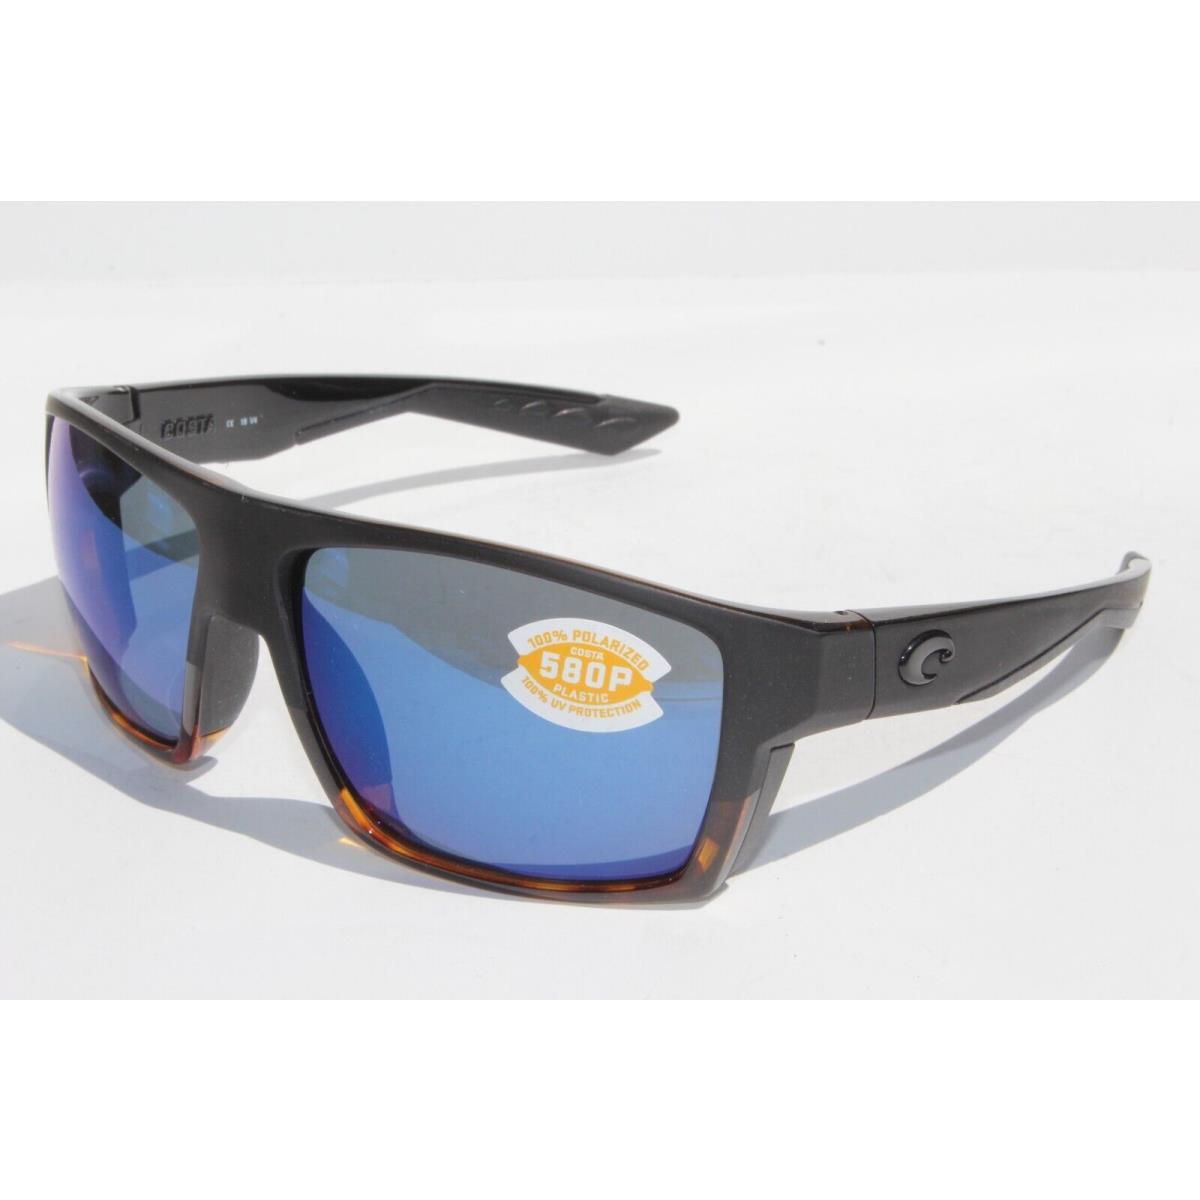 Costa Del Mar sunglasses  - Black Tortoise Frame, Blue Lens 5